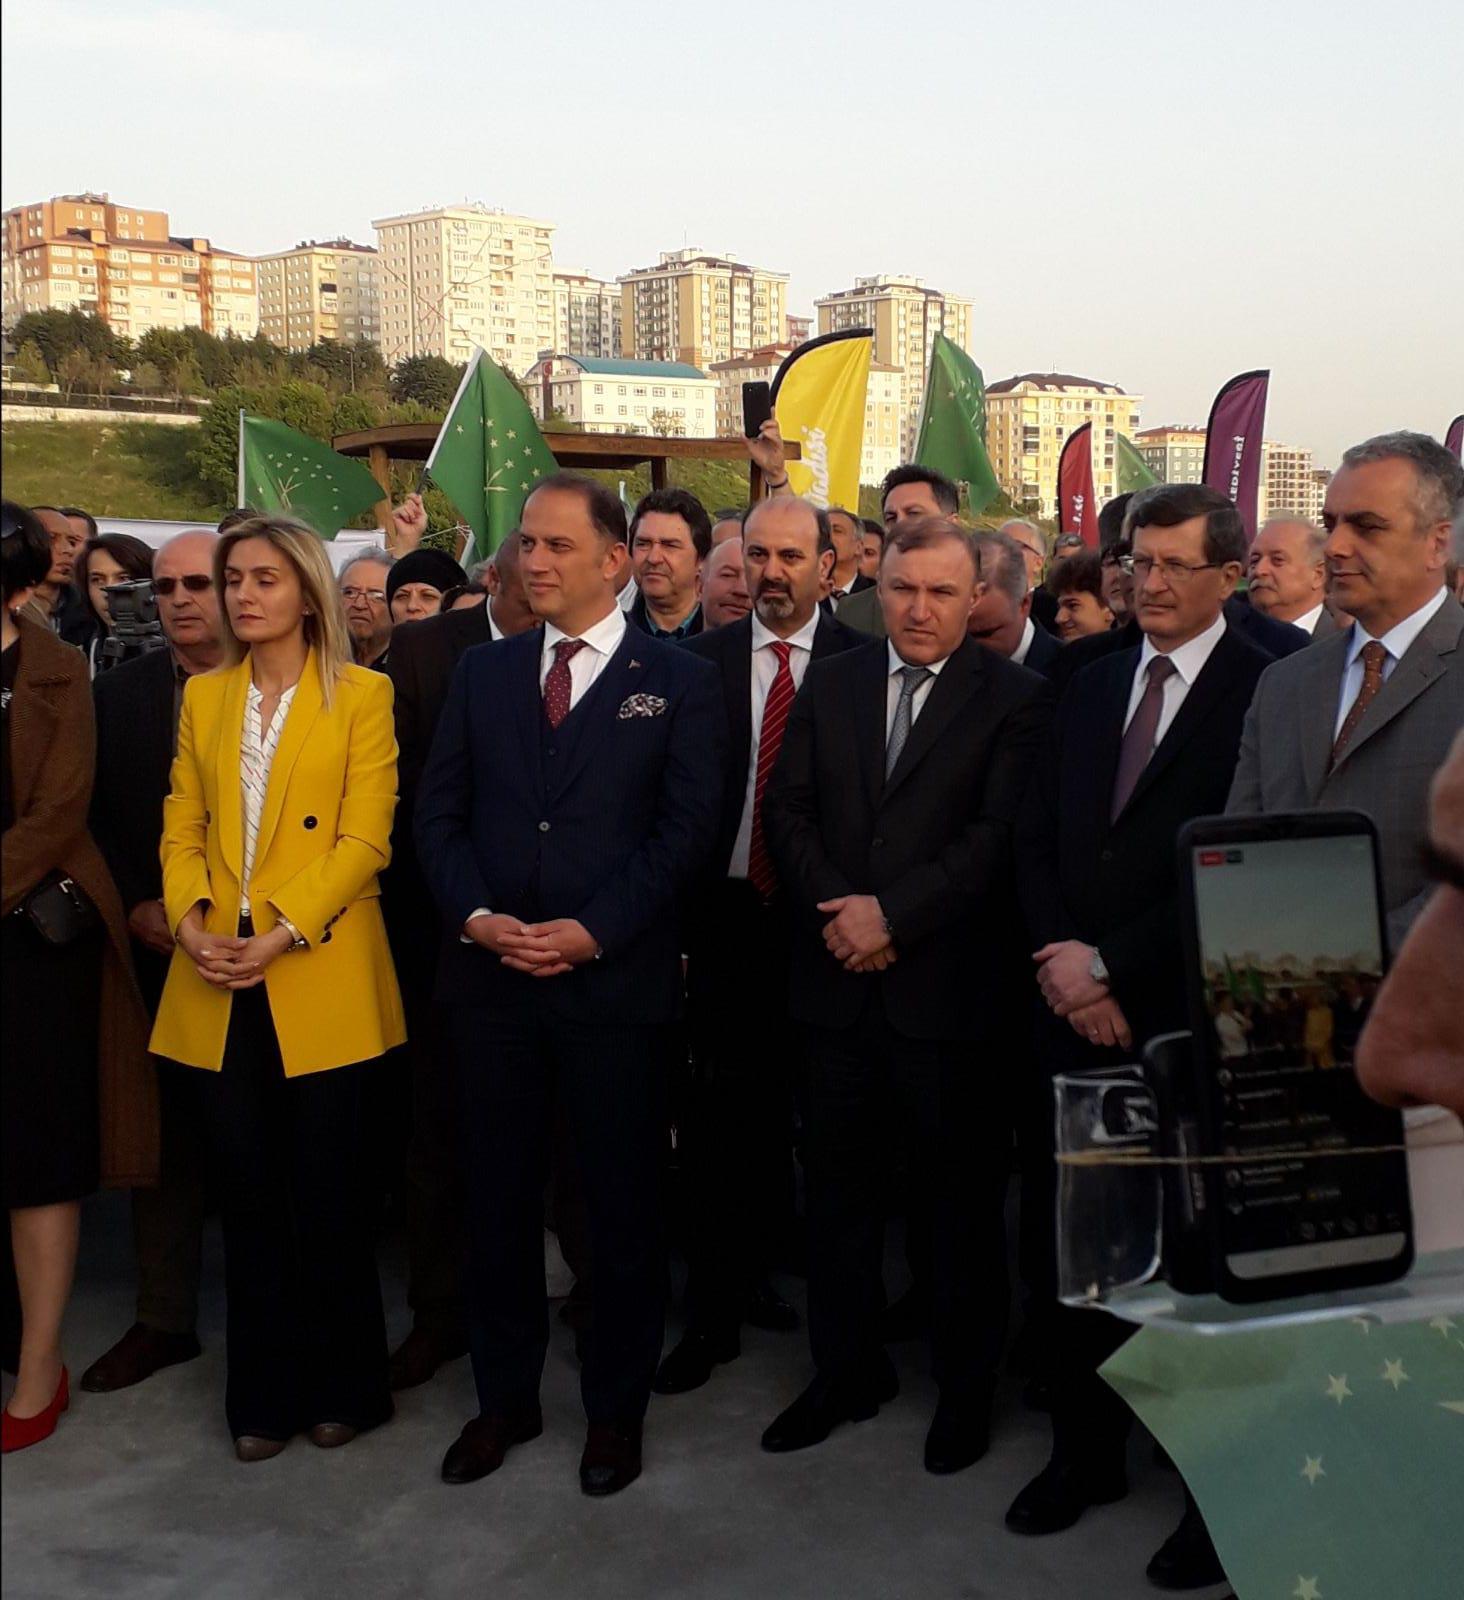 Участники церемонии открытия черкесского культурного центра в Стамбуле. 26 апреля 2019 года. Фото Анжелики Тохтамышевой для "Кавказского узла"